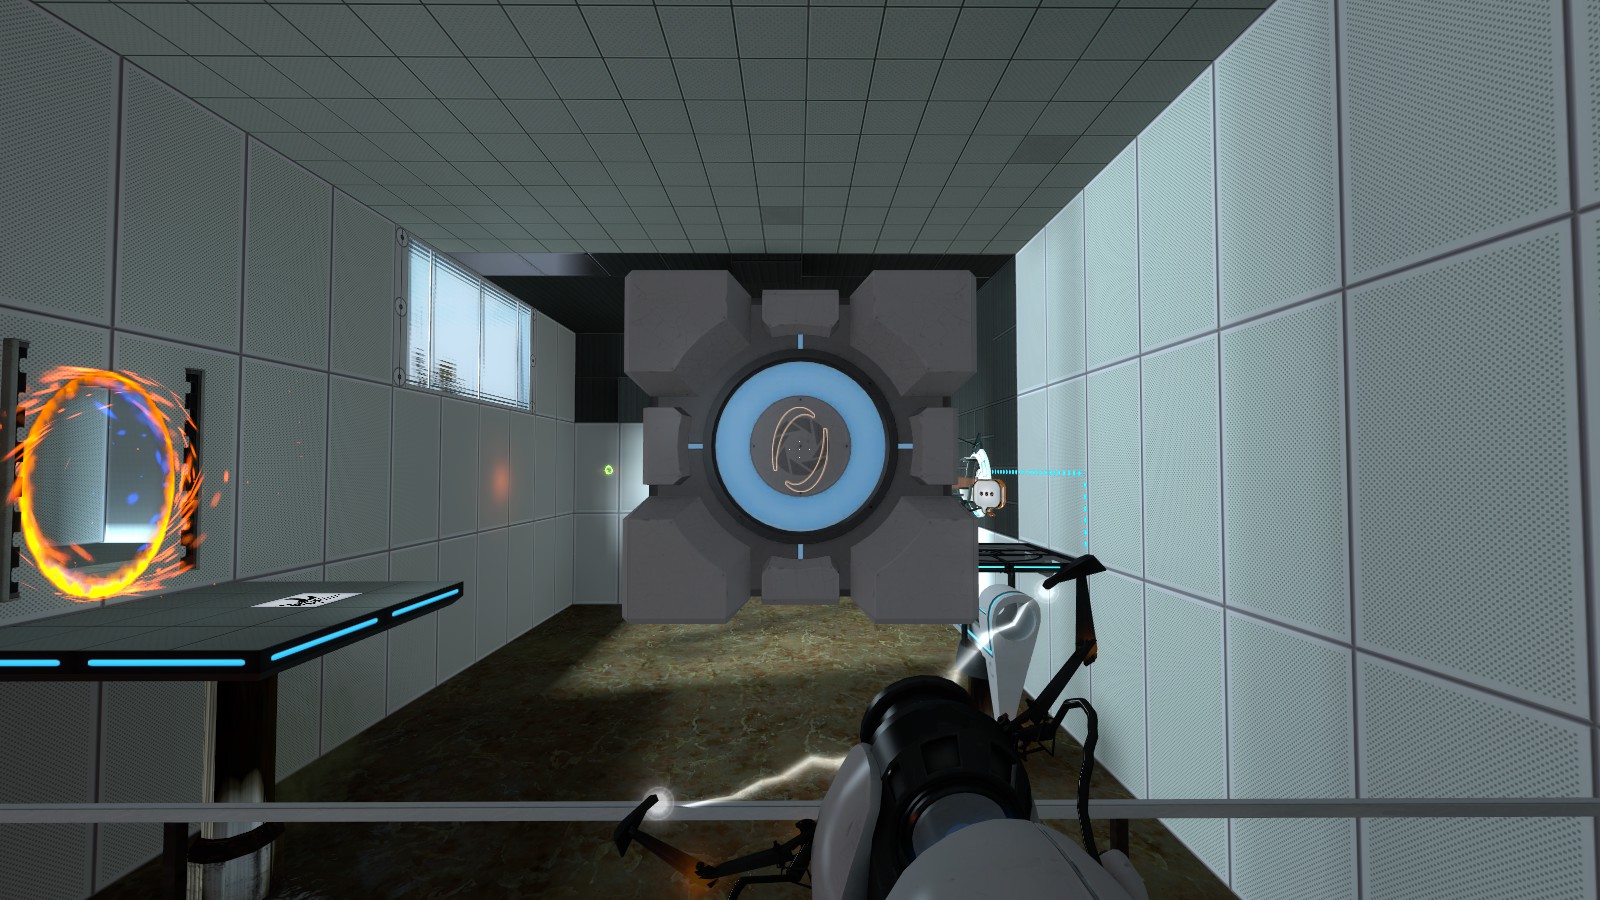 Portal 2 portal gun with hands фото 15